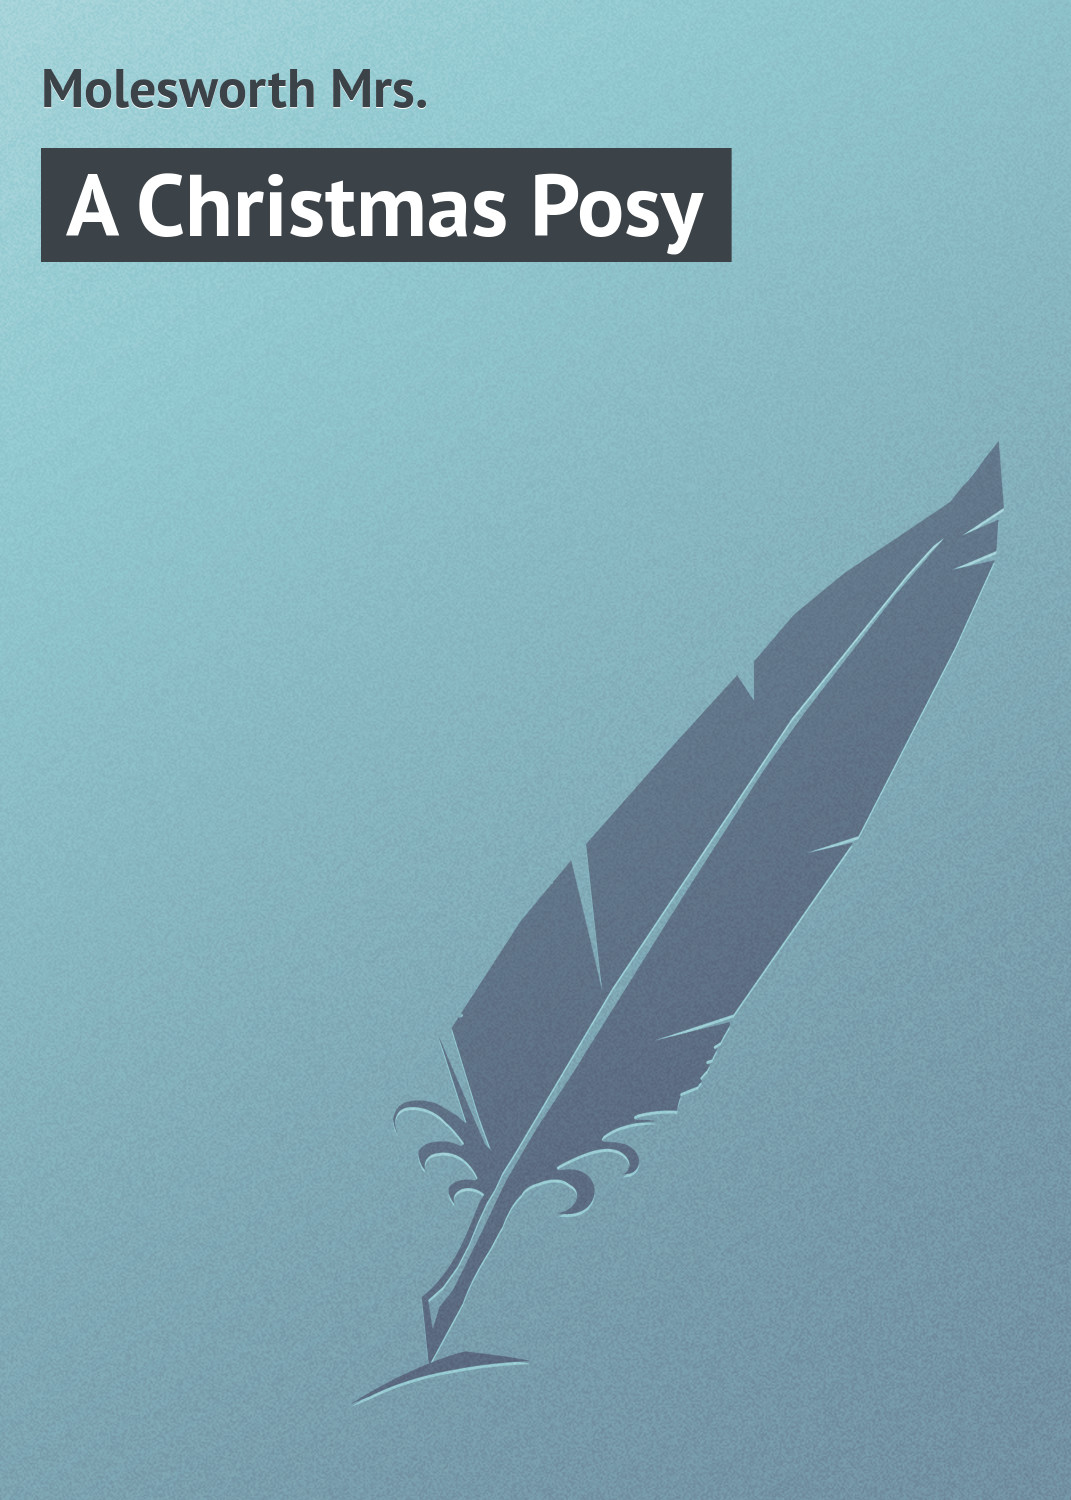 Книга A Christmas Posy из серии , созданная Mrs. Molesworth, может относится к жанру Зарубежная классика, Зарубежные детские книги, Иностранные языки. Стоимость электронной книги A Christmas Posy с идентификатором 23164155 составляет 5.99 руб.